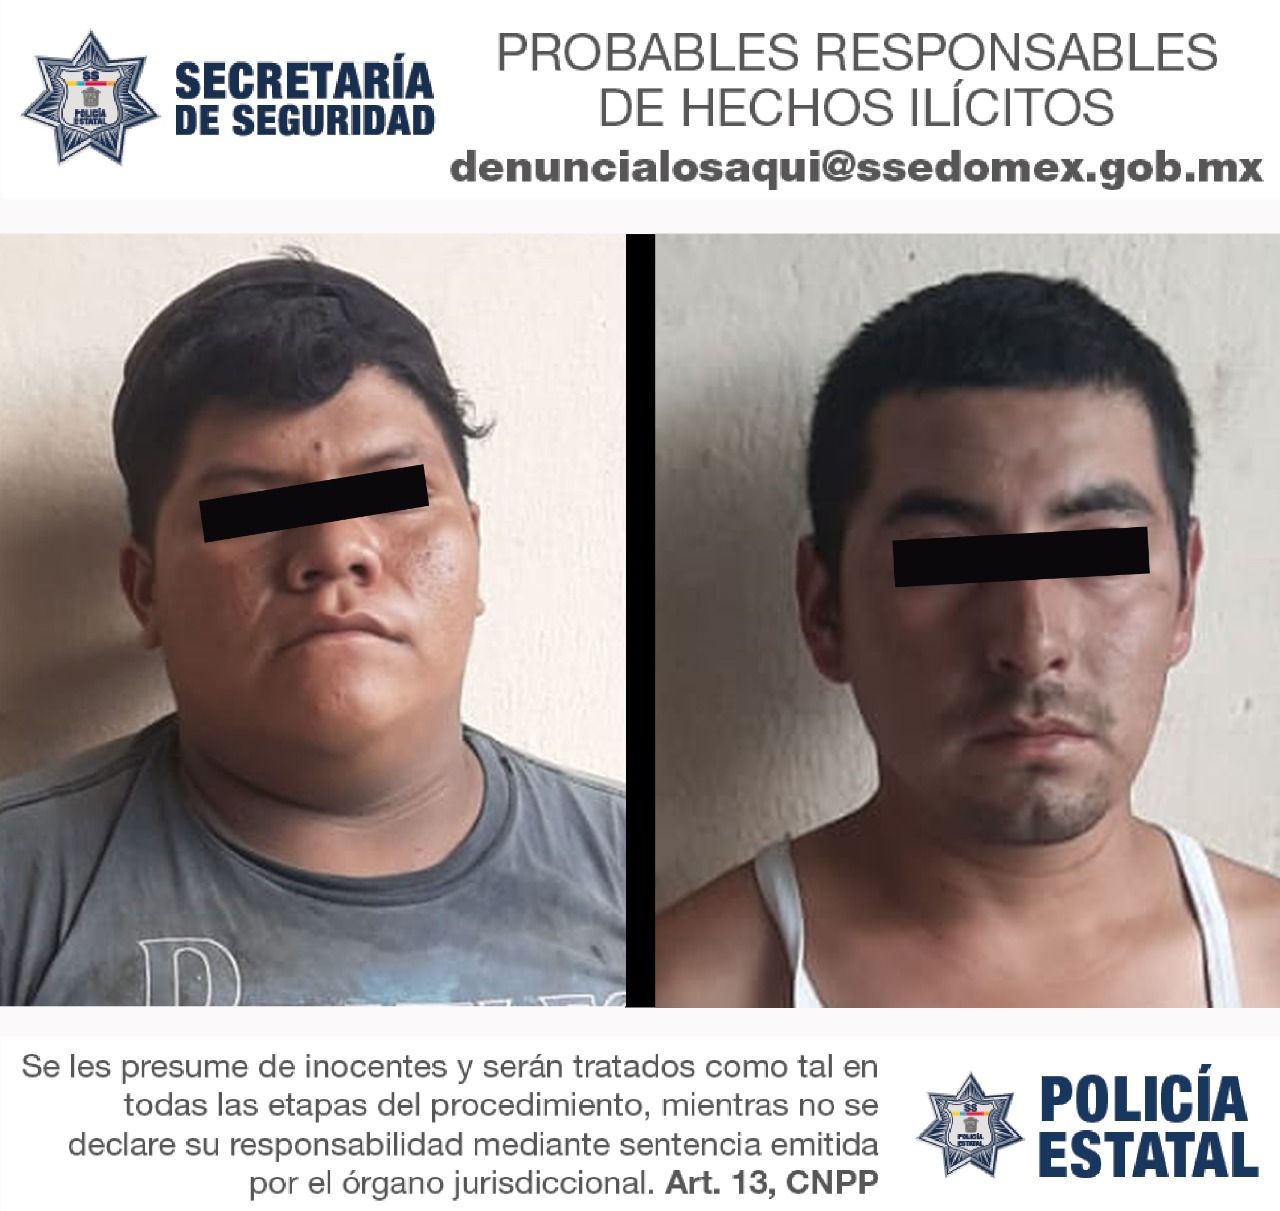 POLICÍAS DE LA SECRETARÍA DE SEGURIDAD DETIENEN A DOS PERSONAS EN POSESIÓN DE AUTOPARTES APARENTEMENTE ROBADAS